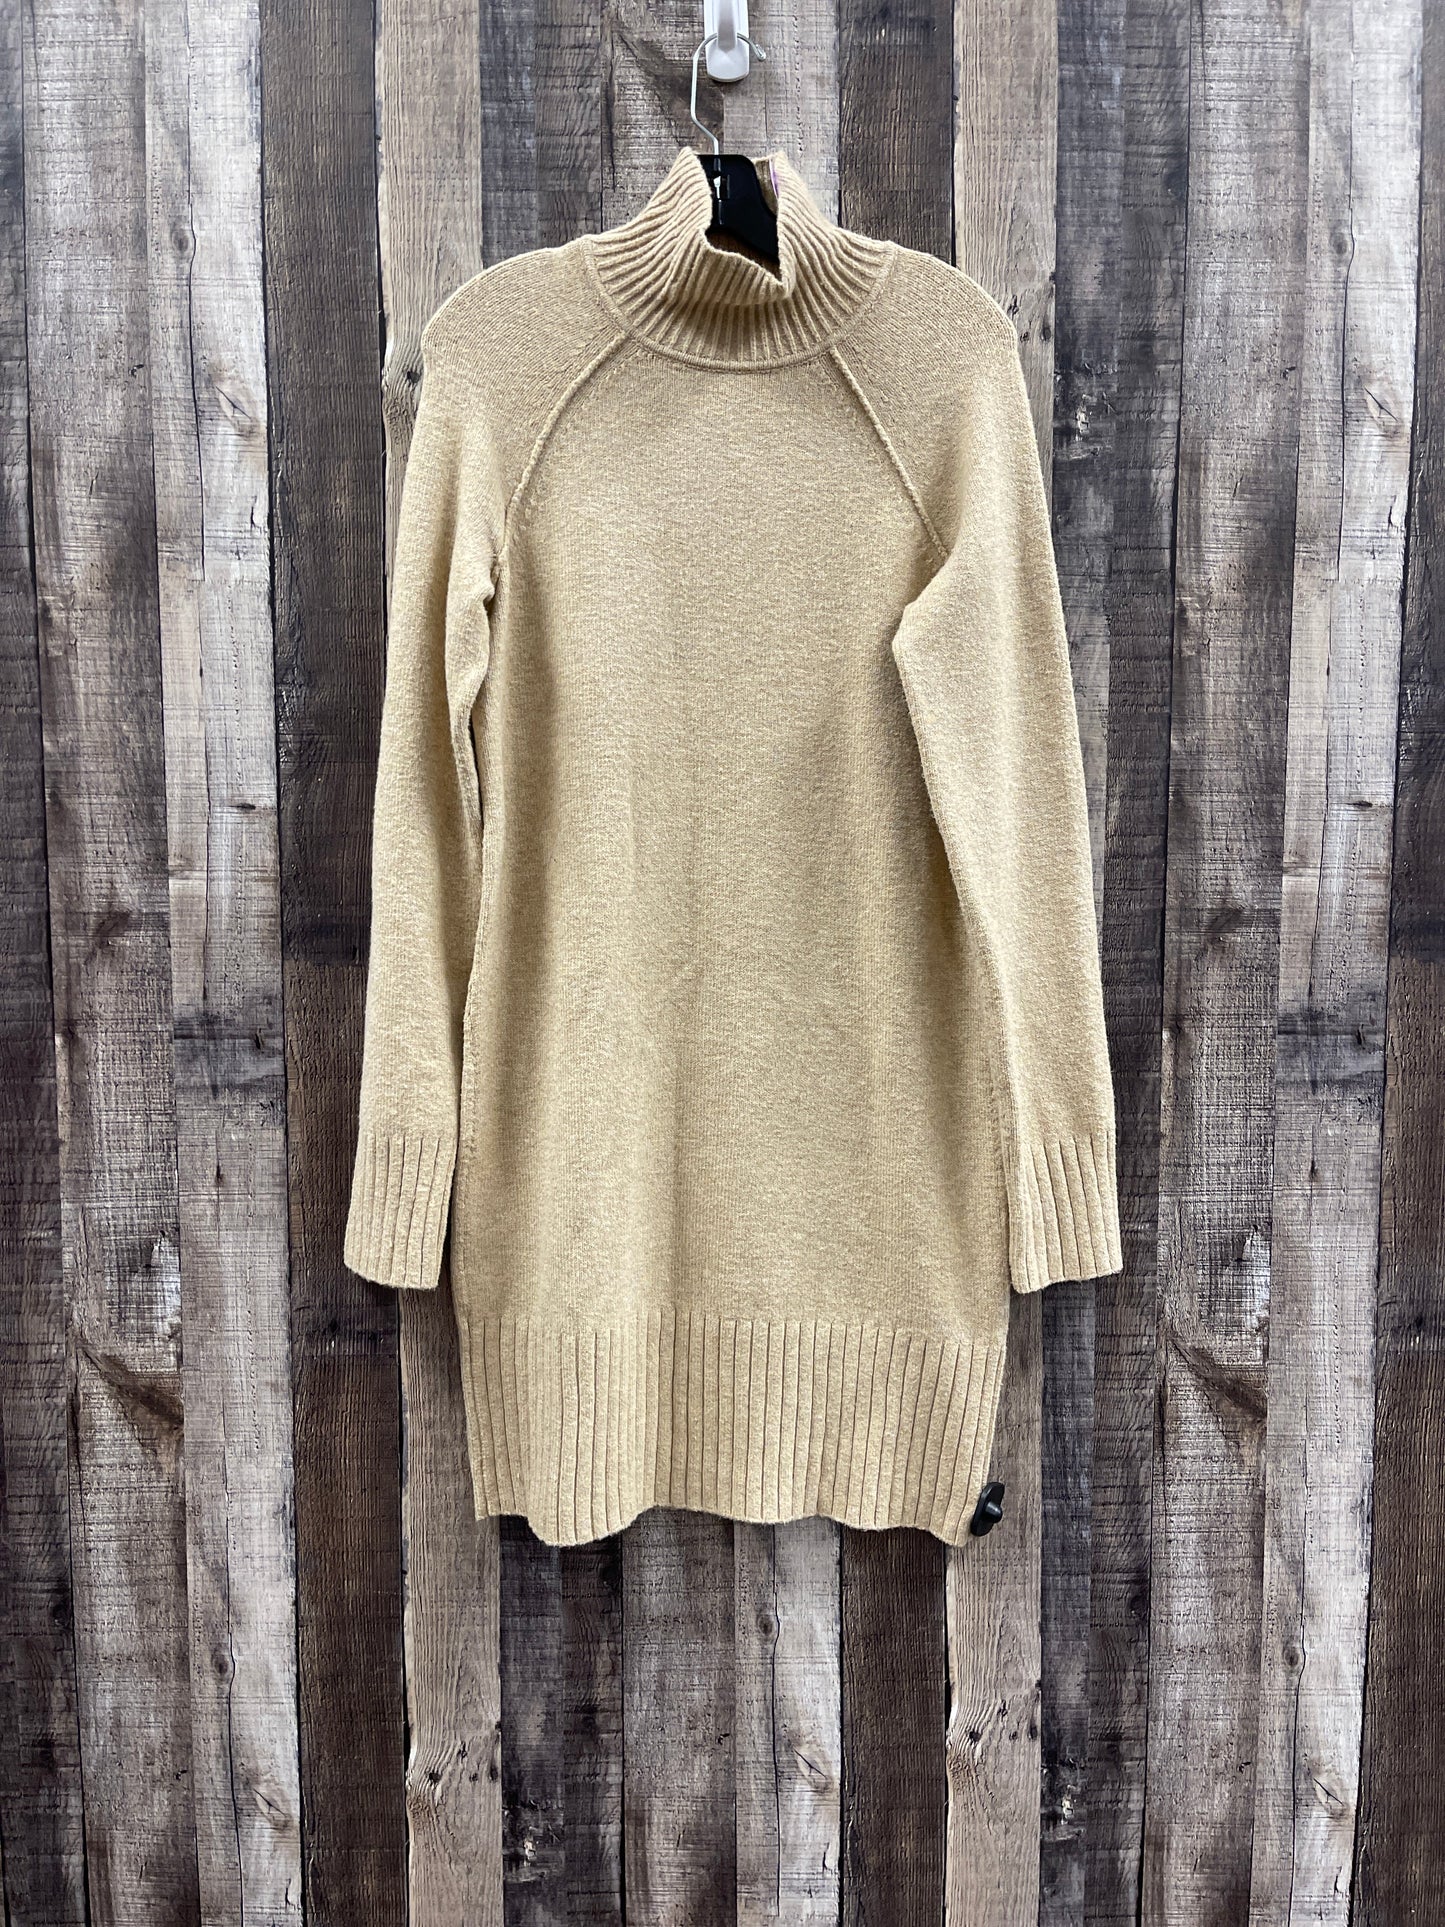 Dress Sweater By Banana Republic  Size: Xs